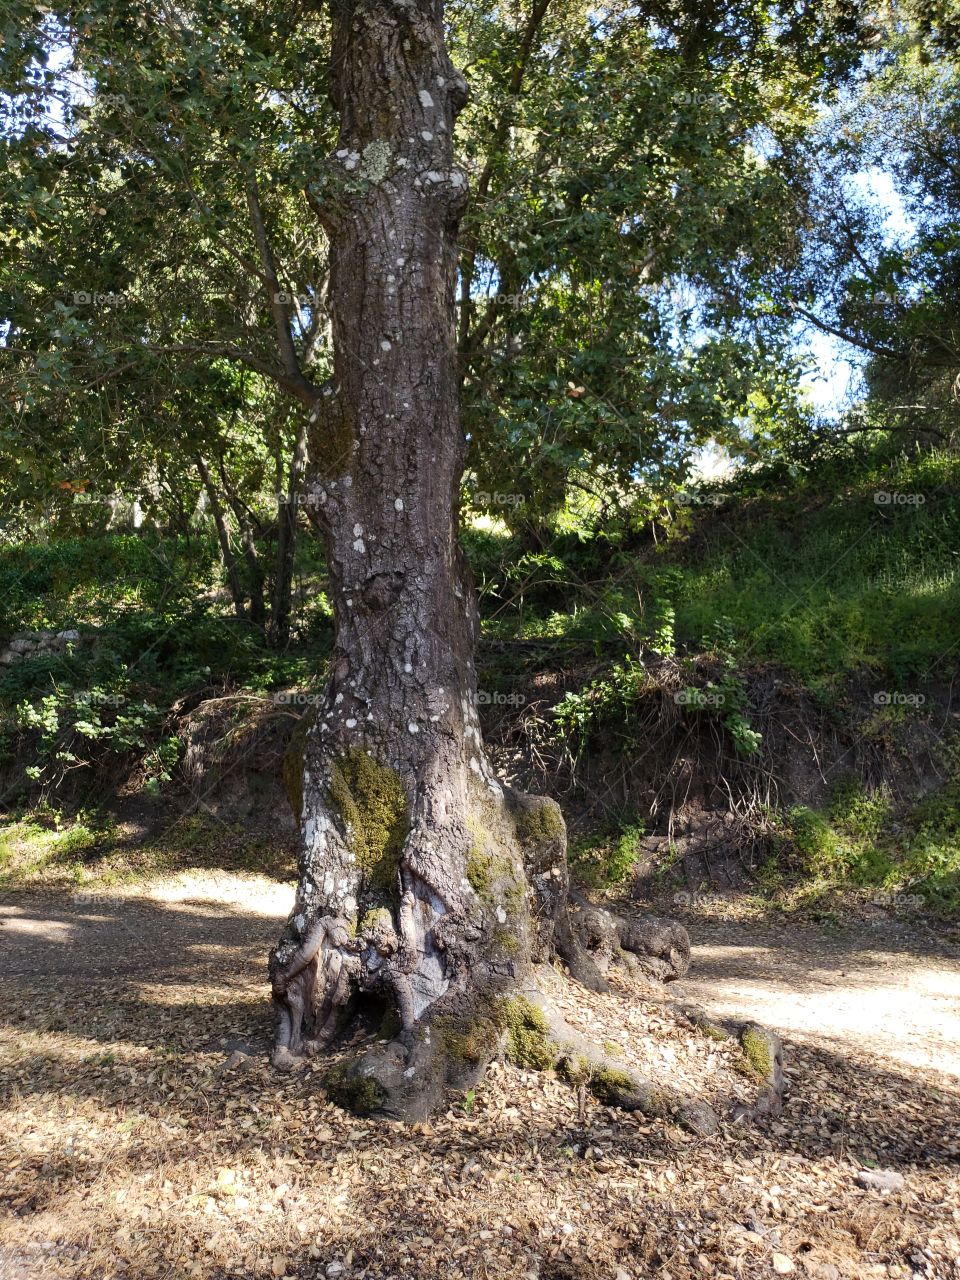 grumpy tree